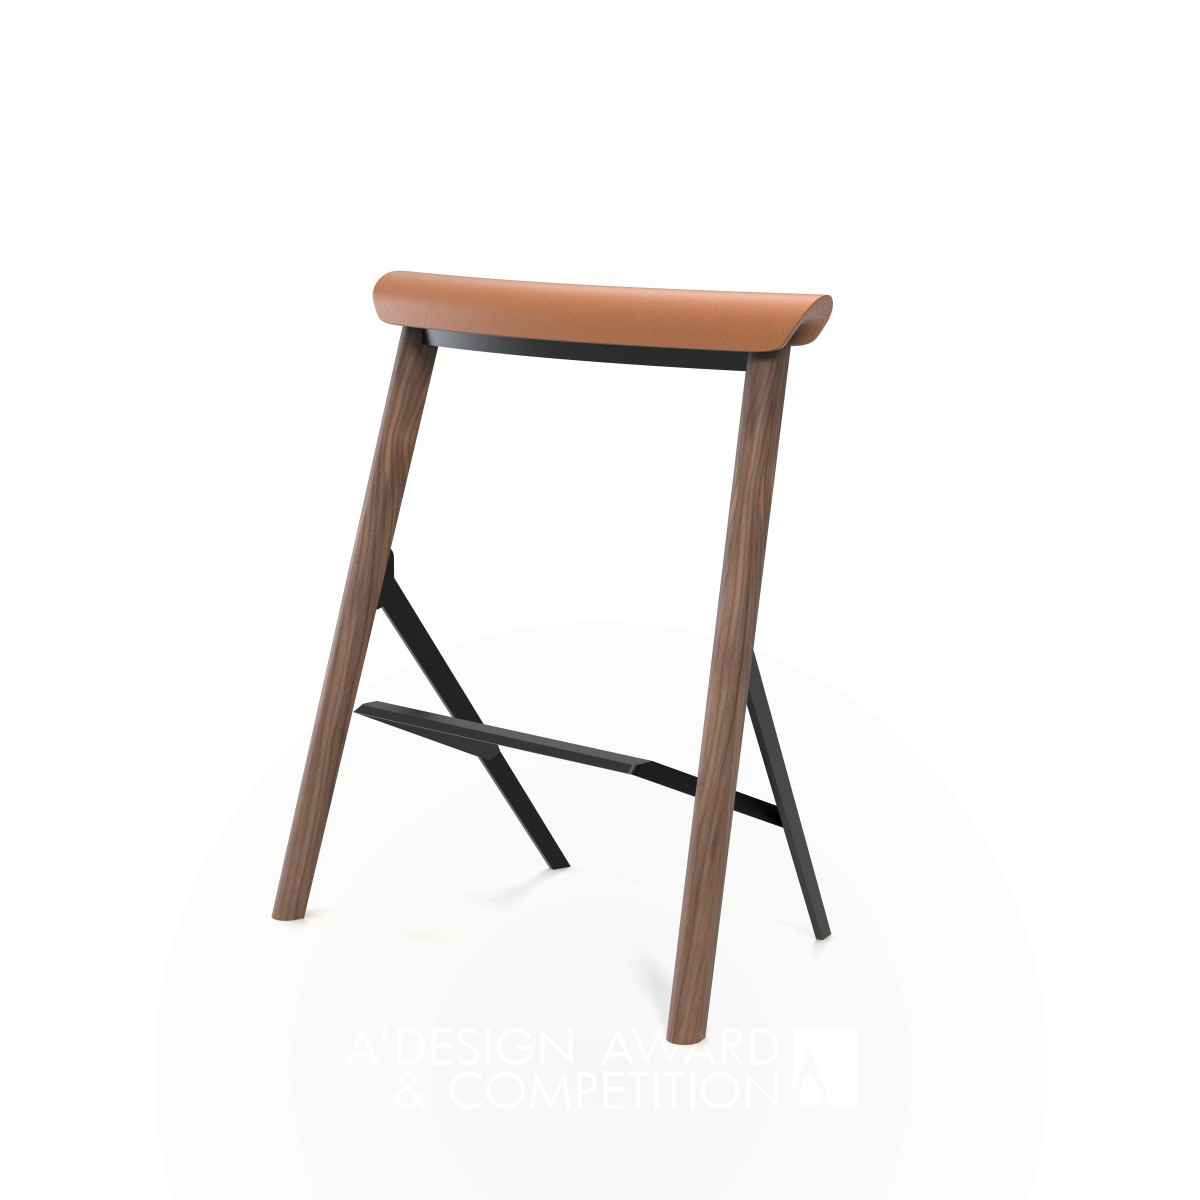 Balustrade Chair: Un Design Unico che Ridefinisce il Concetto di Seduta